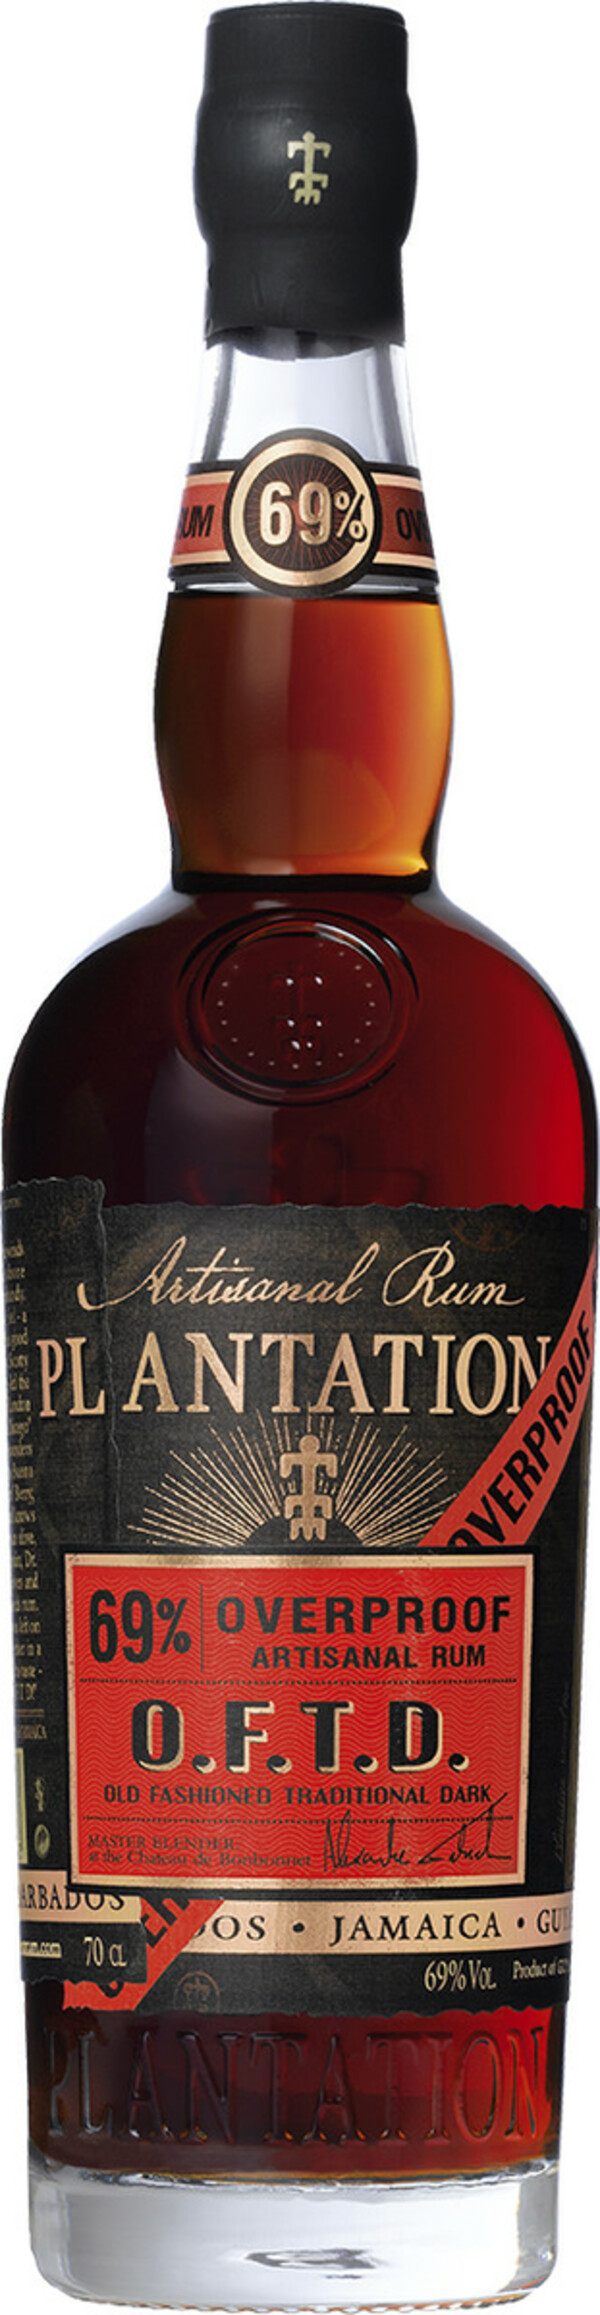 Bild 1 von Plantation Rum O.F.T.D 69% 0,7L